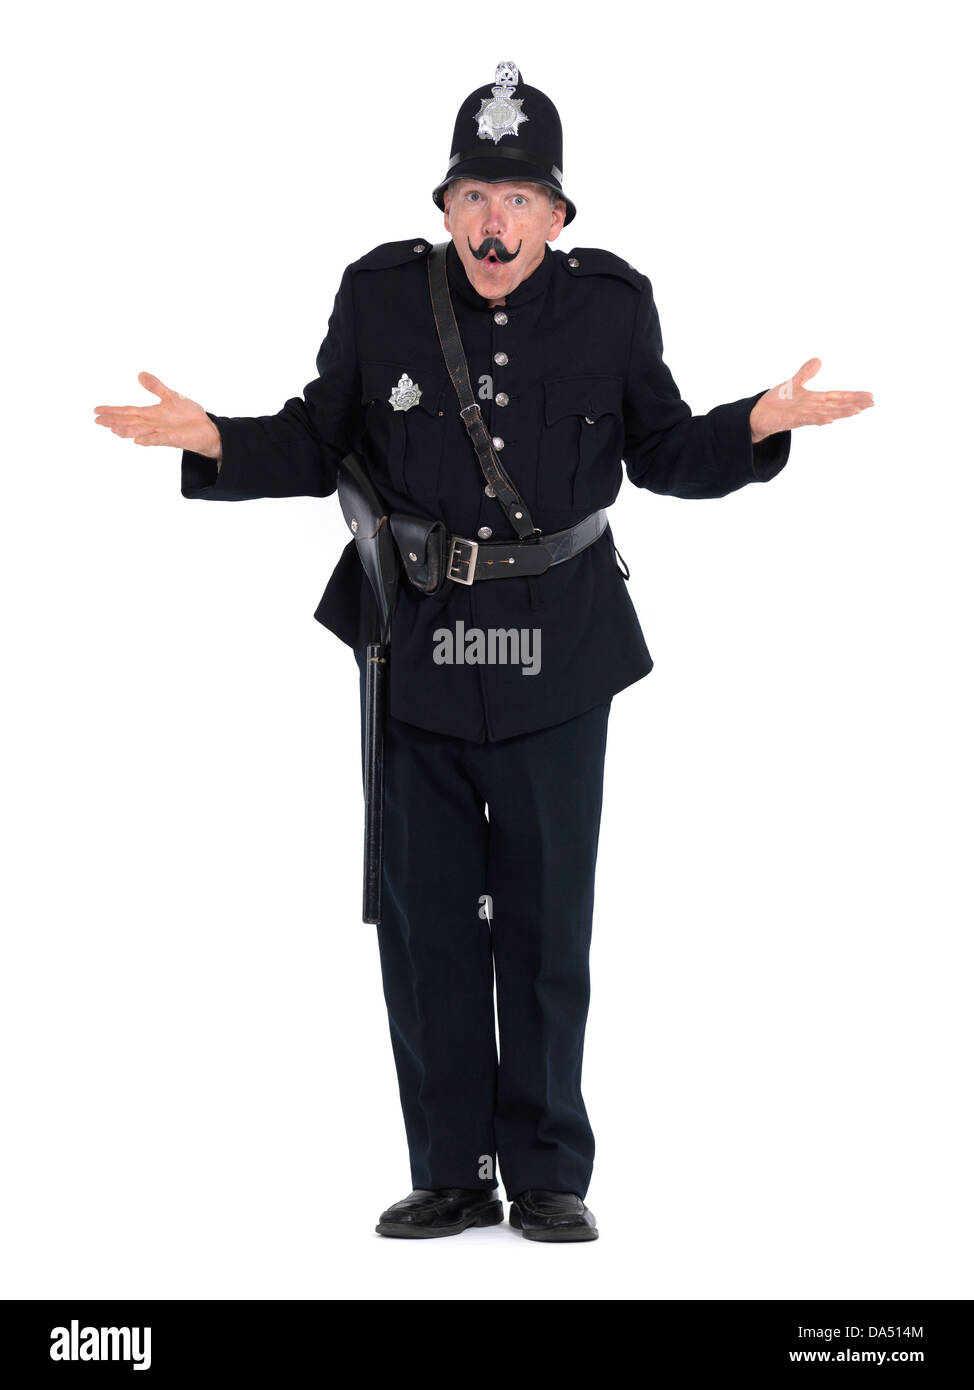 Oficial de policía vintage humorístico, keystone cop con expresión divertida, aislado sobre fondo blanco. Foto de stock